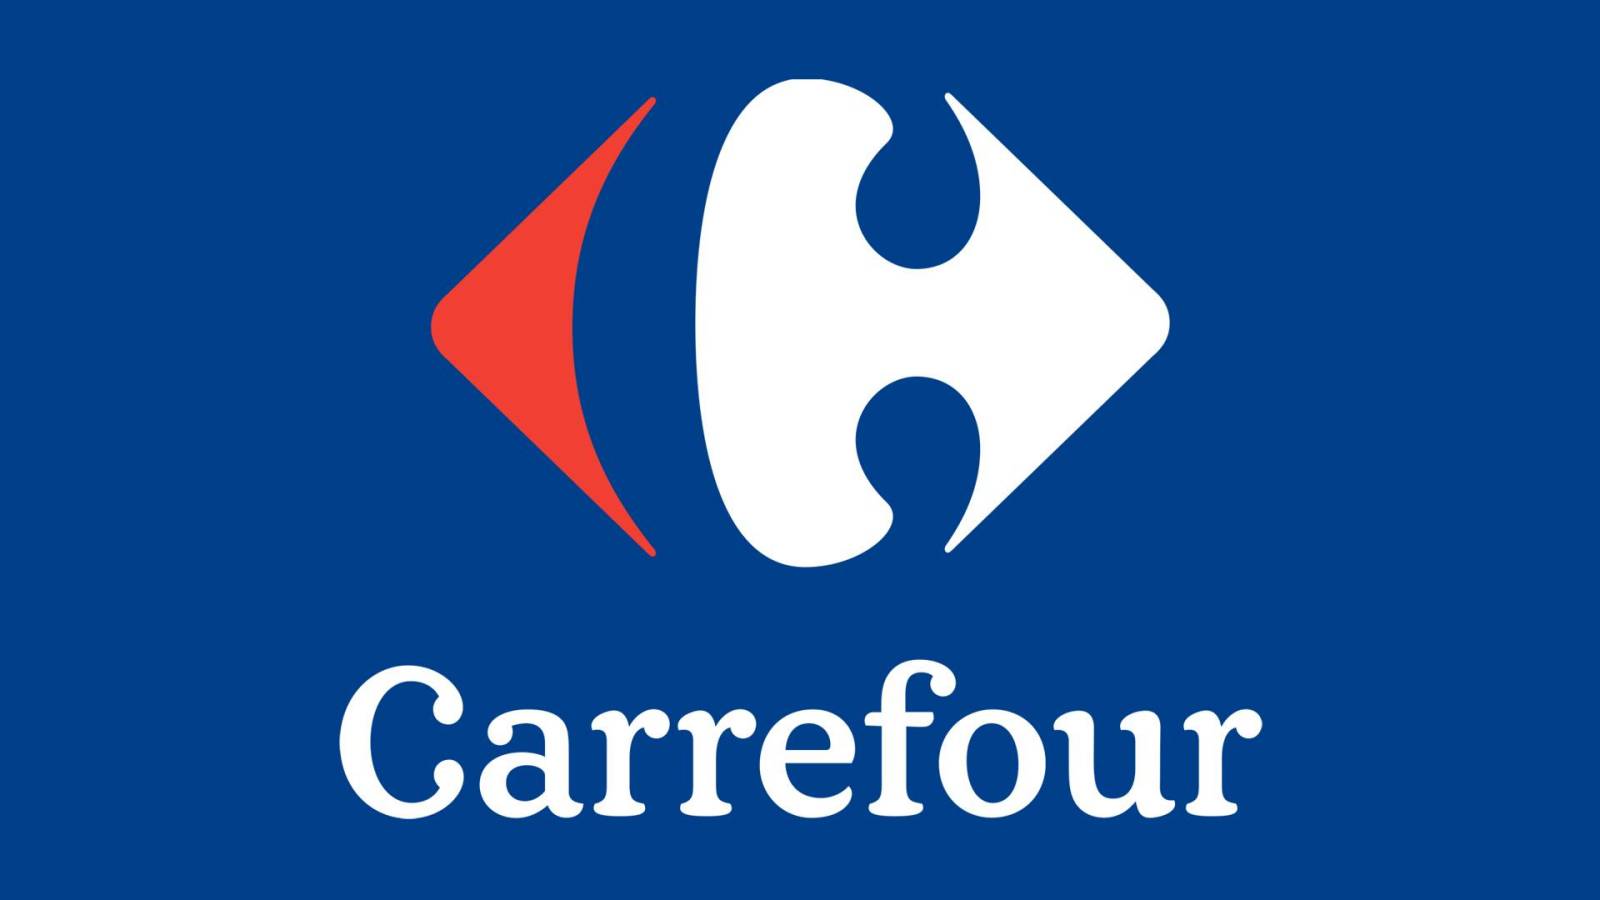 Coupon Carrefour